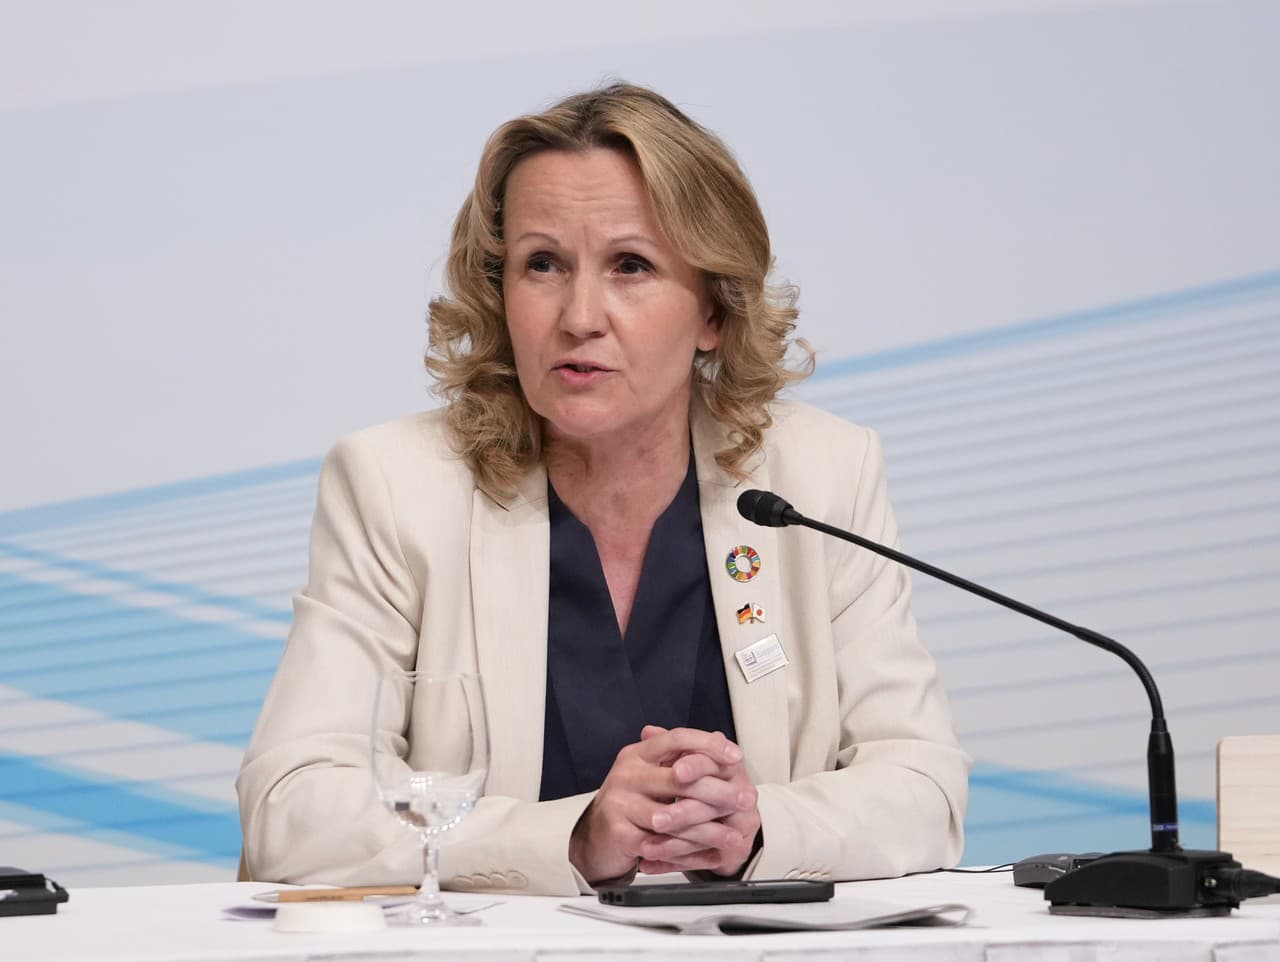 Nemecká ministerka pre životné prostredie Steffi Lemkeová (55)